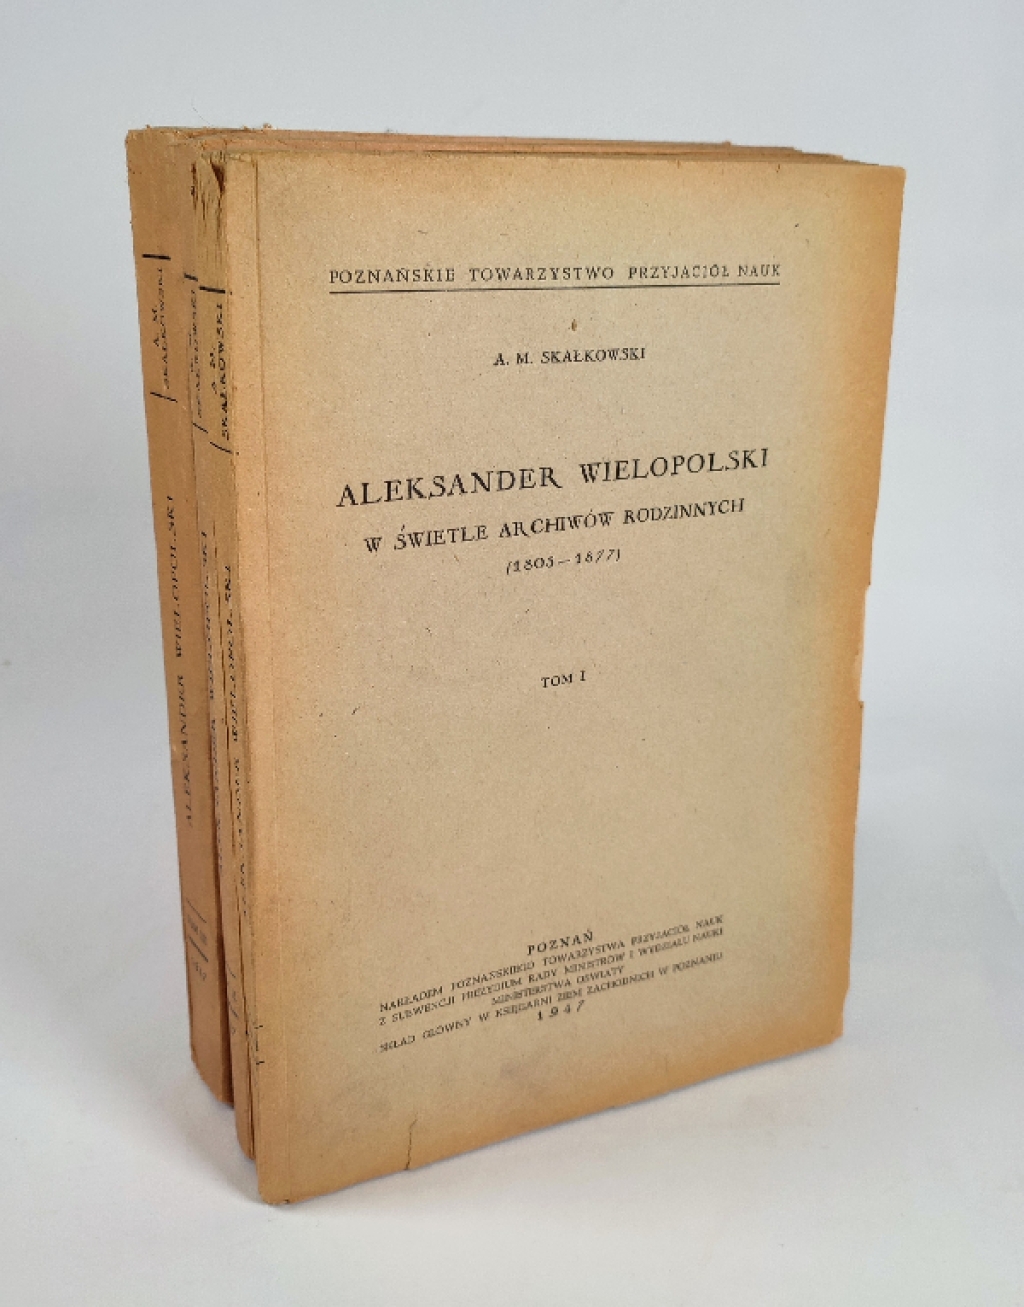 Aleksander Wielopolski w świetle archiwów rodzinnych (1803-1877), t. I-III